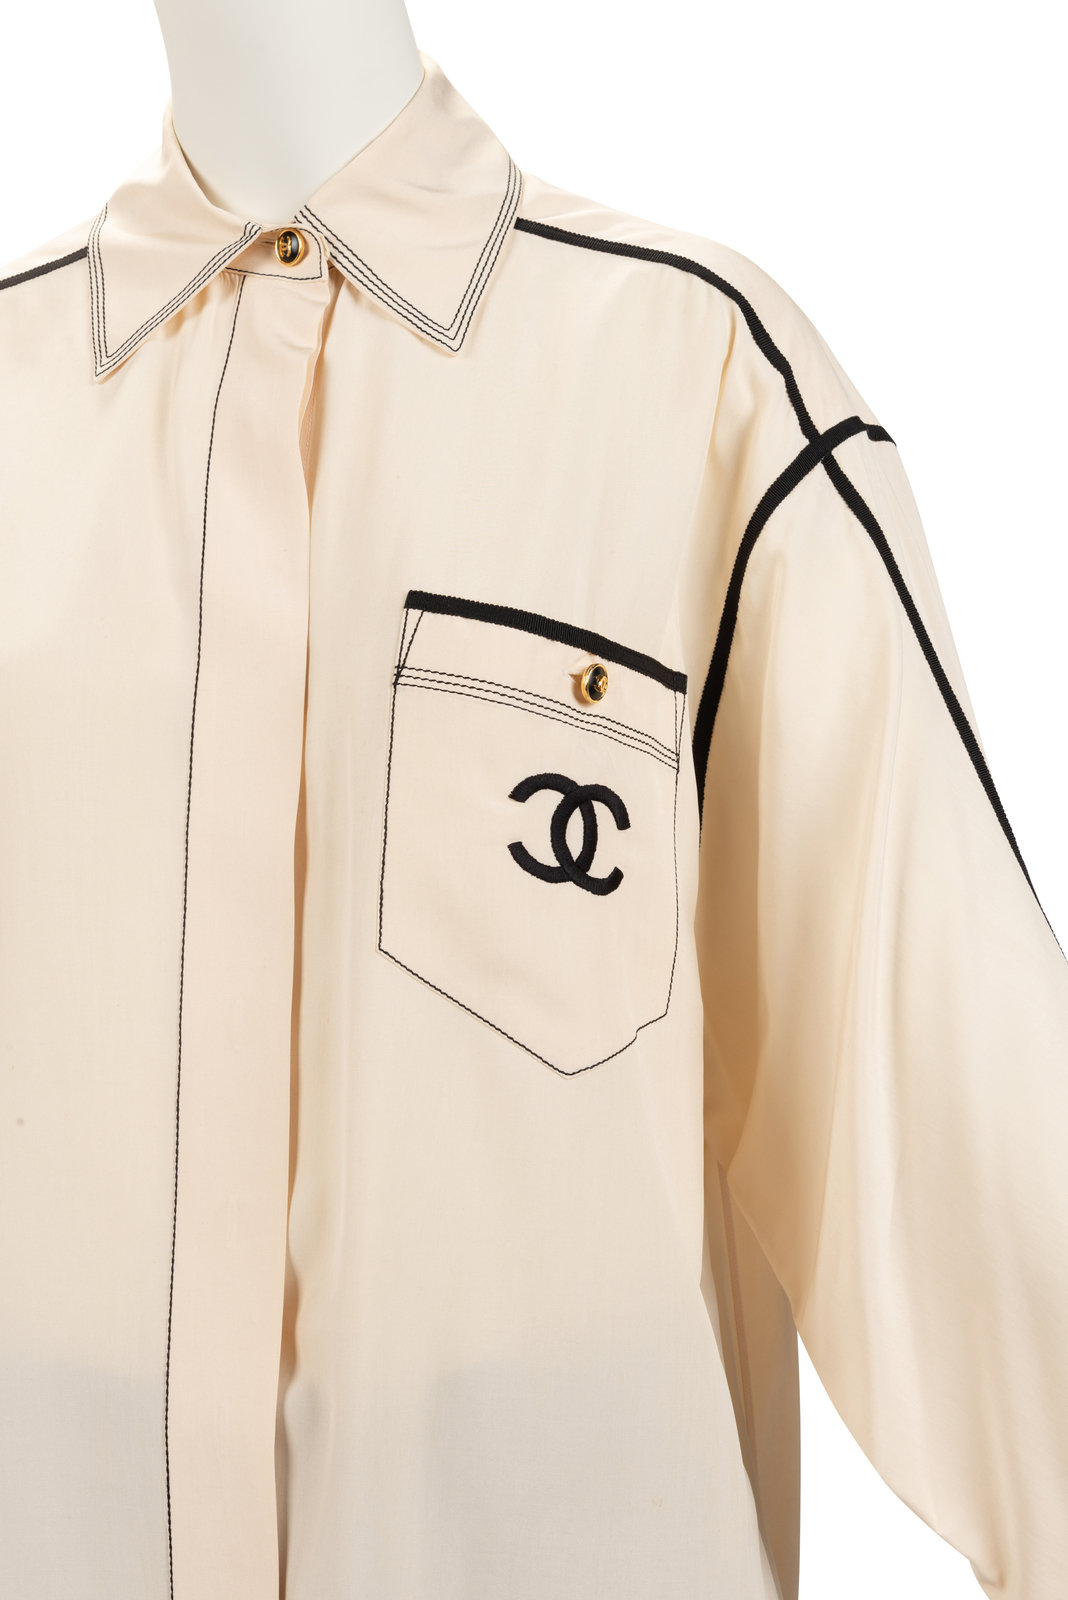 Chanel Shirt and Skirt, 1980-90s